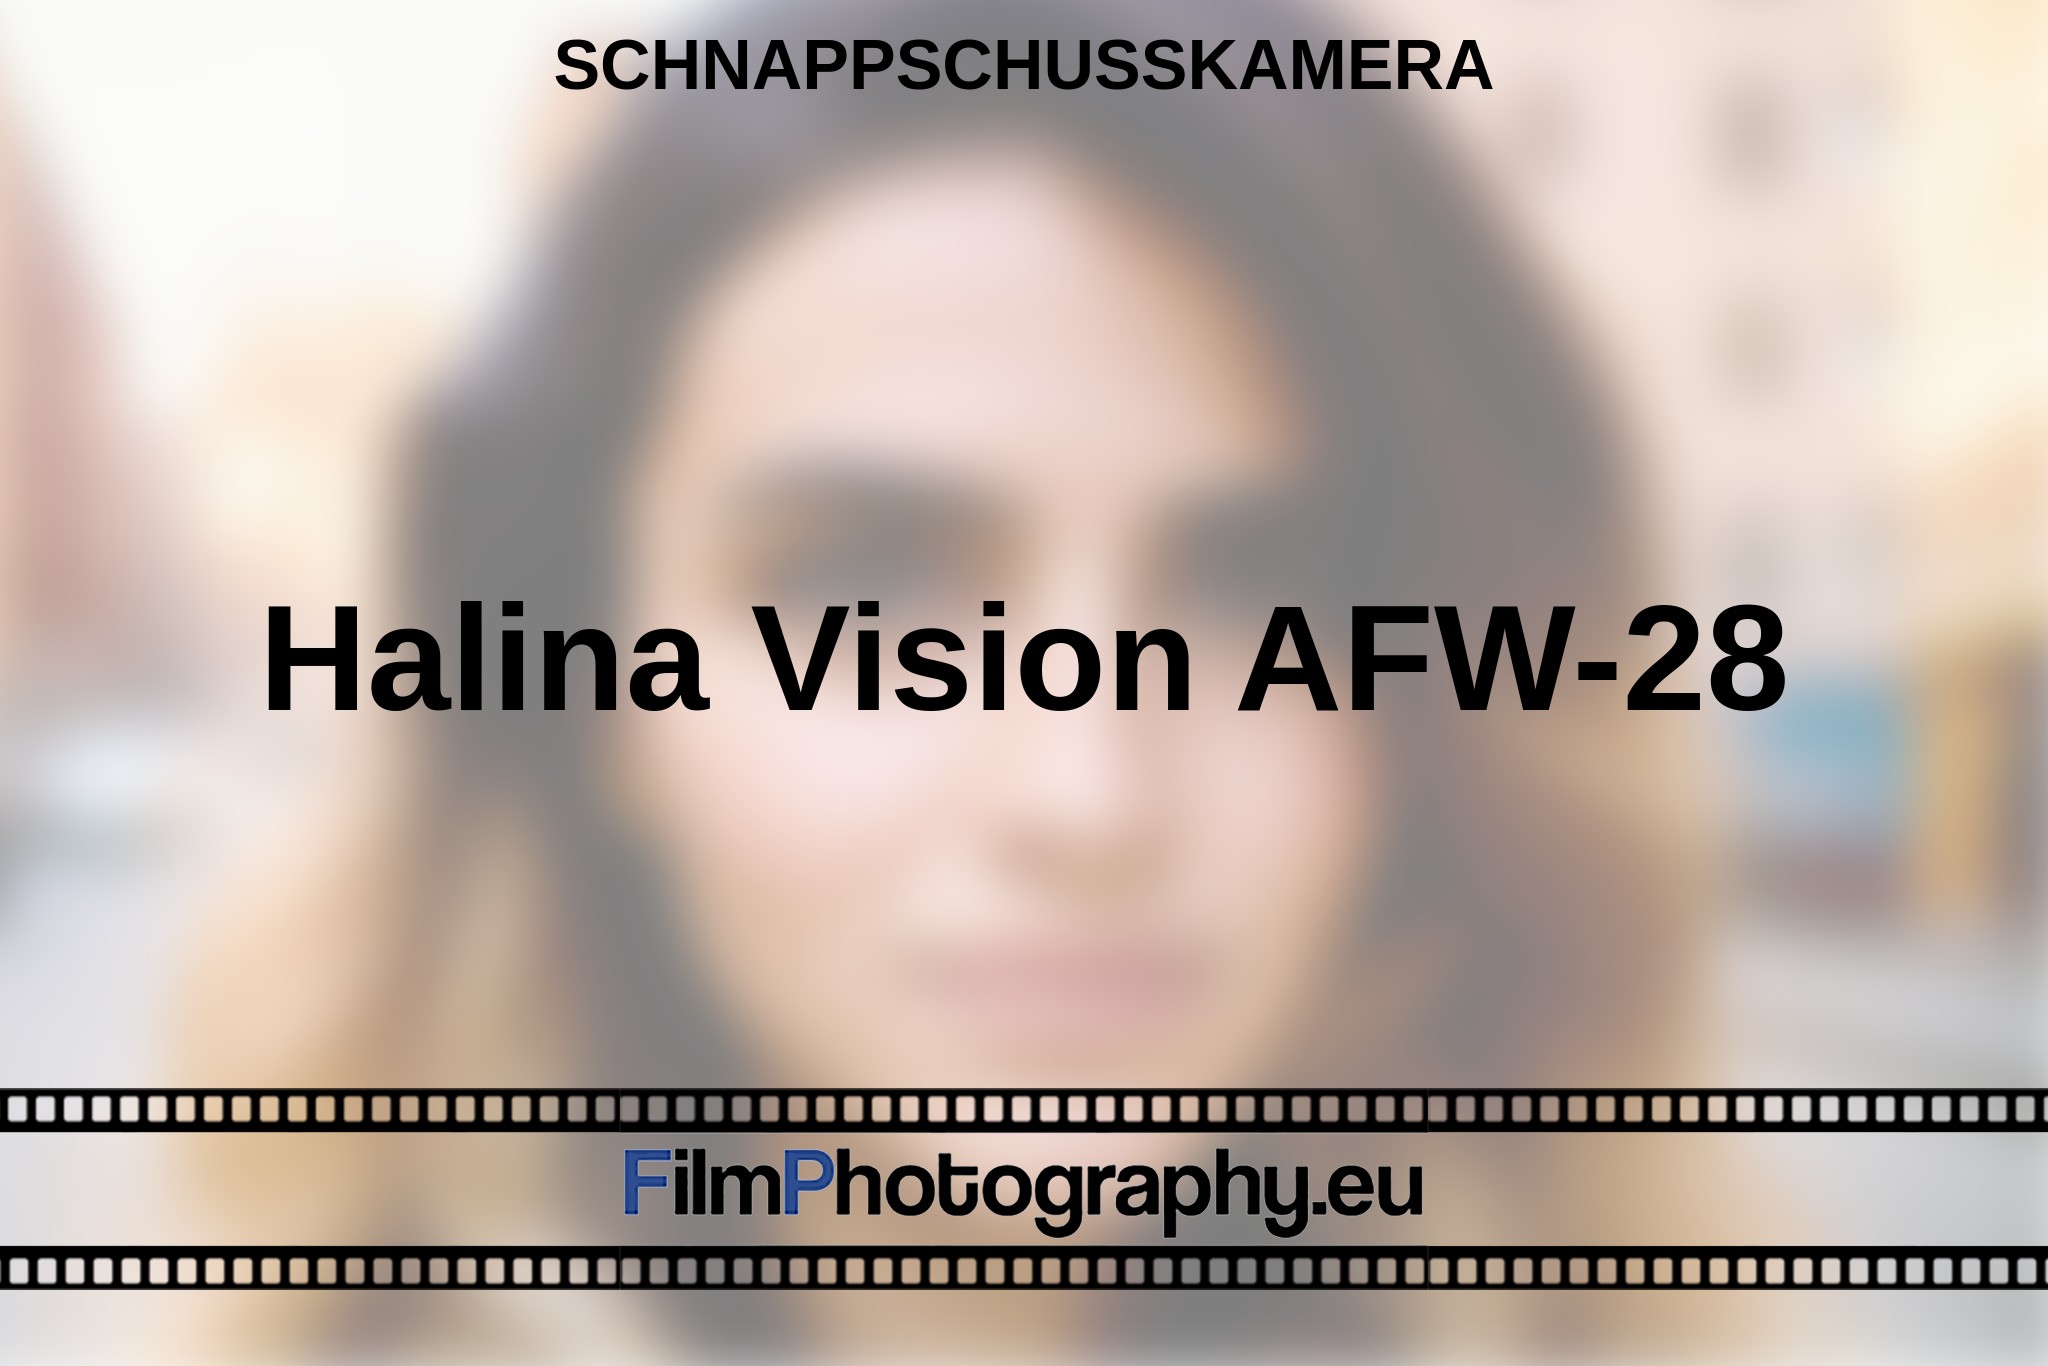 halina-vision-afw-28-schnappschusskamera-bnv.jpg